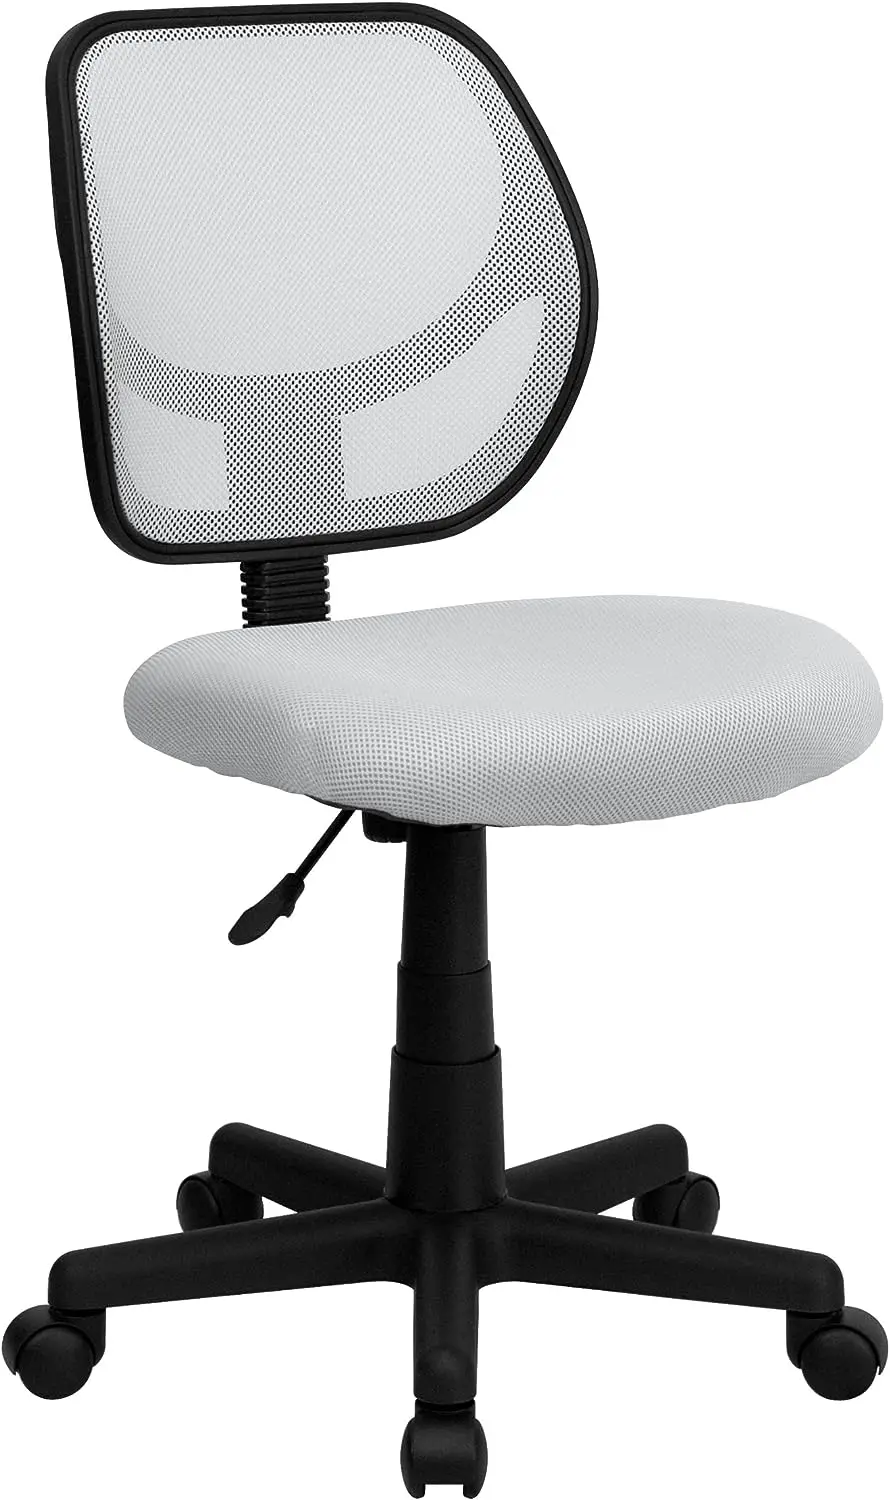 

Вращающийся офисный стул с низкой спинкой из белой сетки